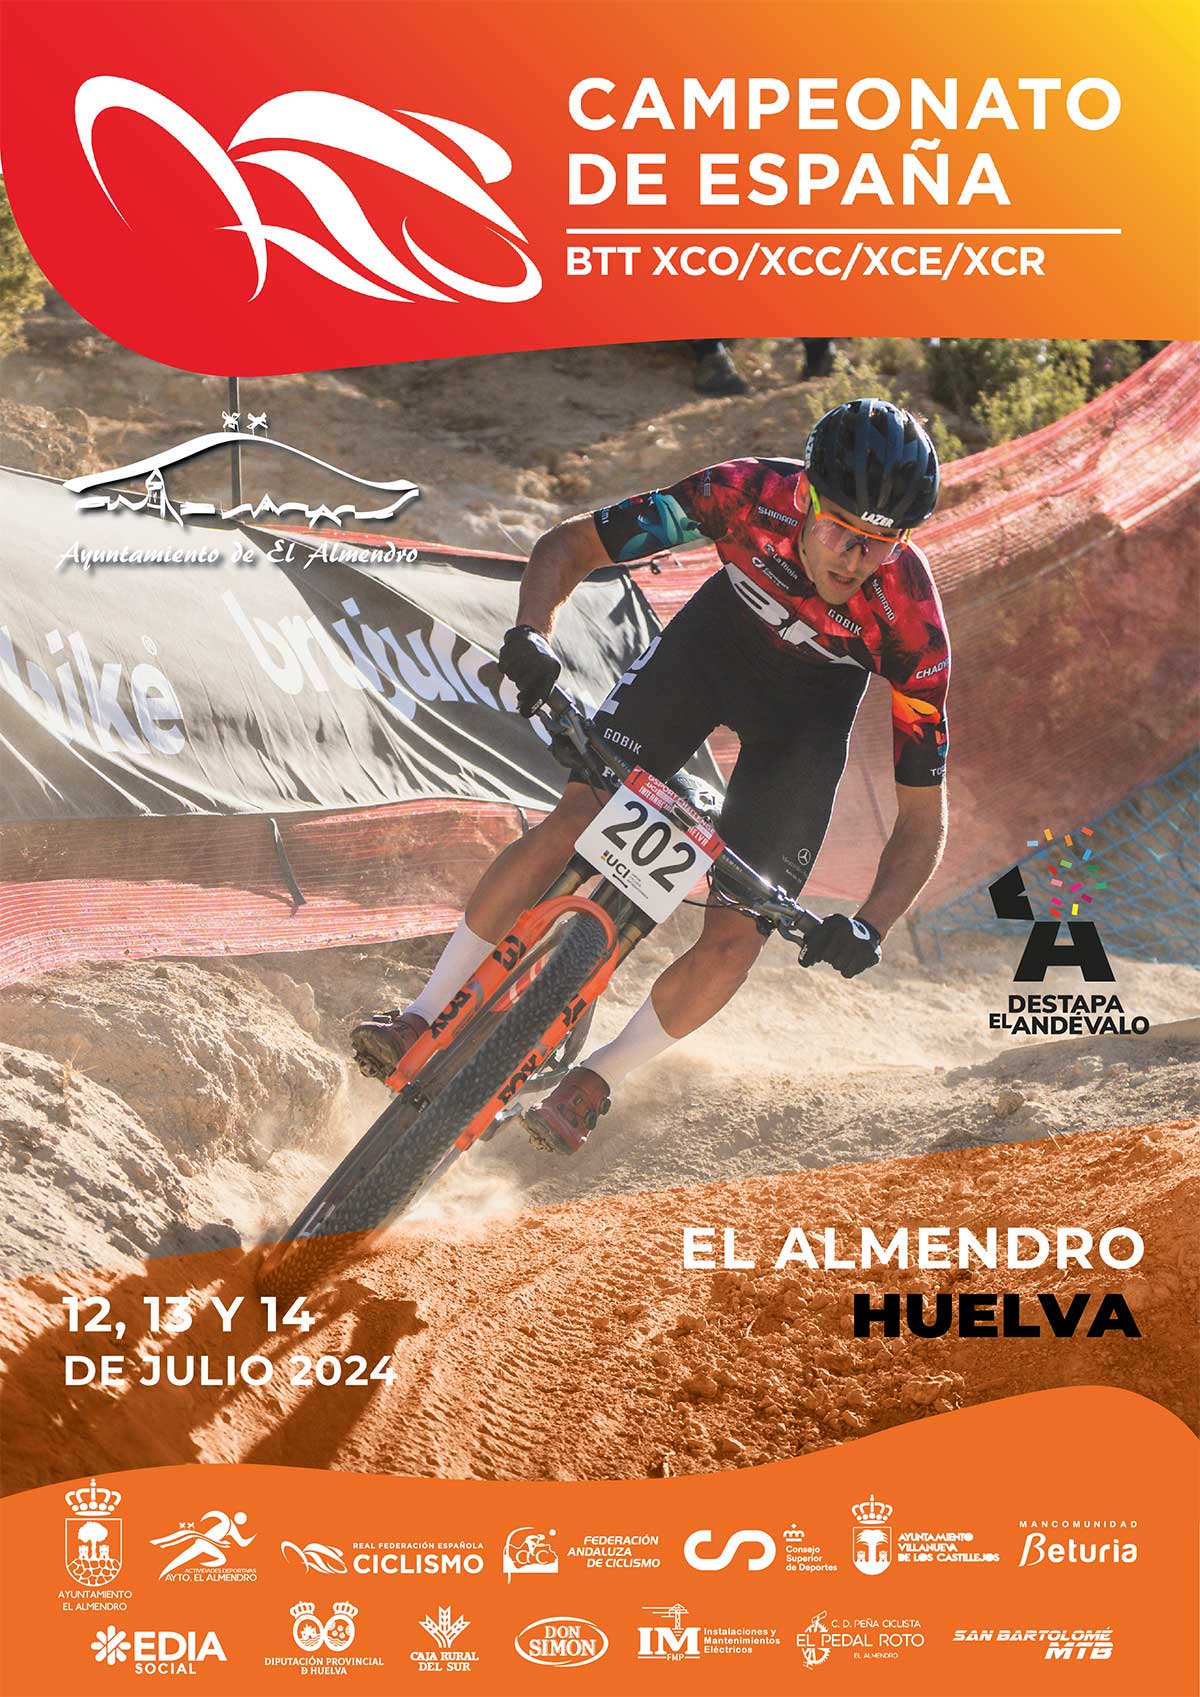 Los campeones de España de XCO, XCE, XCR y Short Track de 2024 se deciden este fin de semana en El Almendro